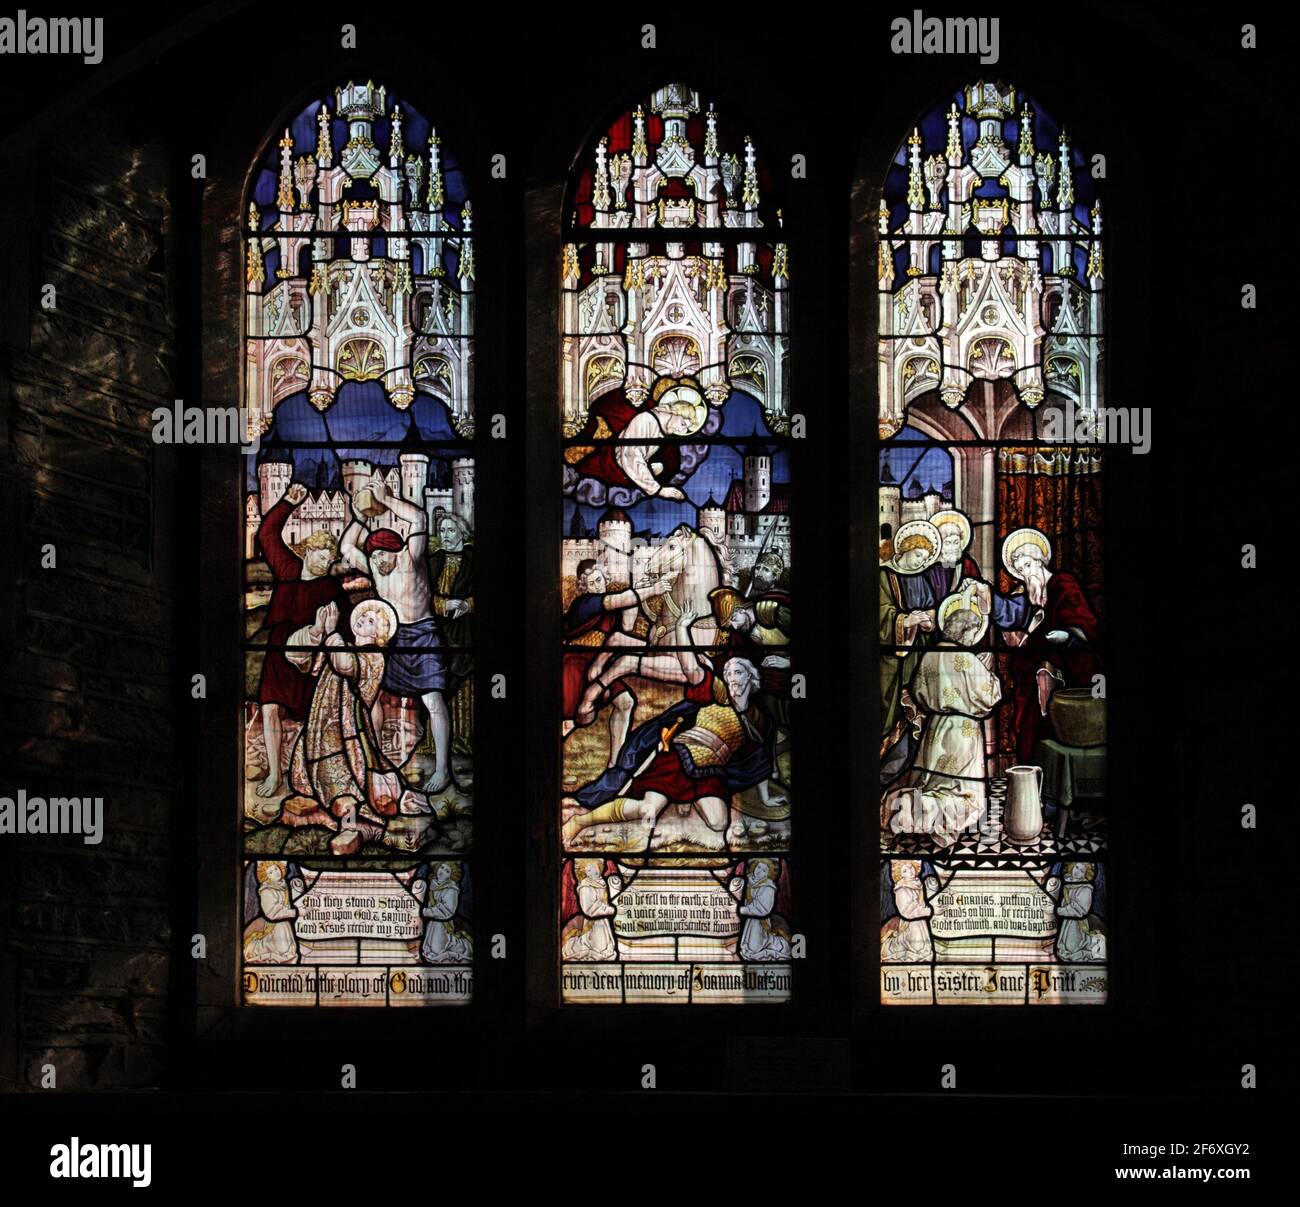 Buntglasfenster von Burlison und Grylls, das das Martyrium von St. Stephen, die Umwandlung von Saul & Ananias von Damaskus und die Watermillock Kirche darstellt Stockfoto